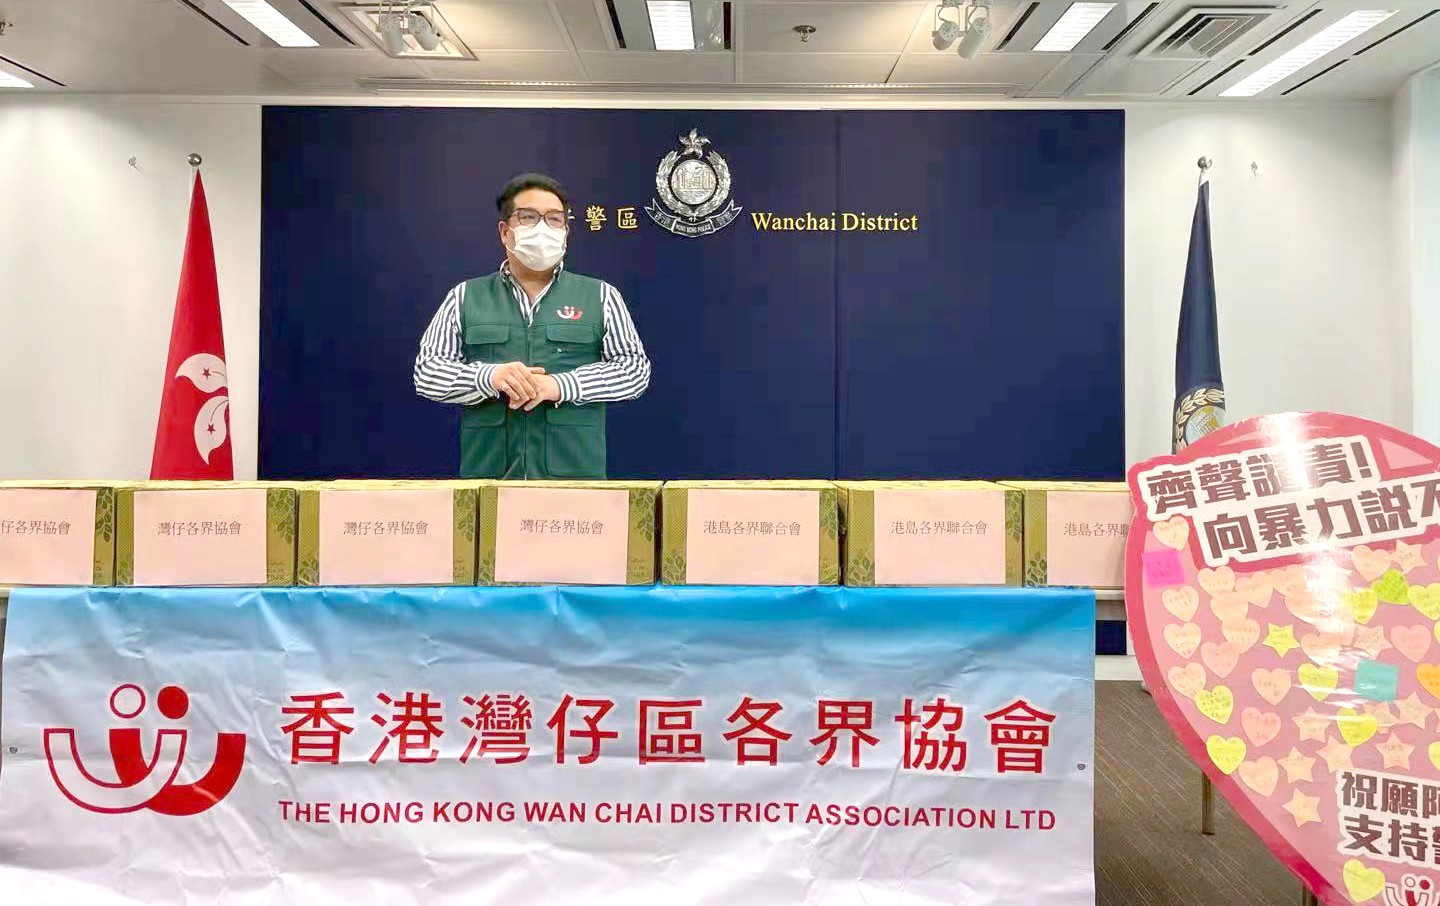 香港灣仔區各界協會前往香港警察總部慰問警員, 向警方送上愛心卡和慰問物資以示鼓勵同支持-2